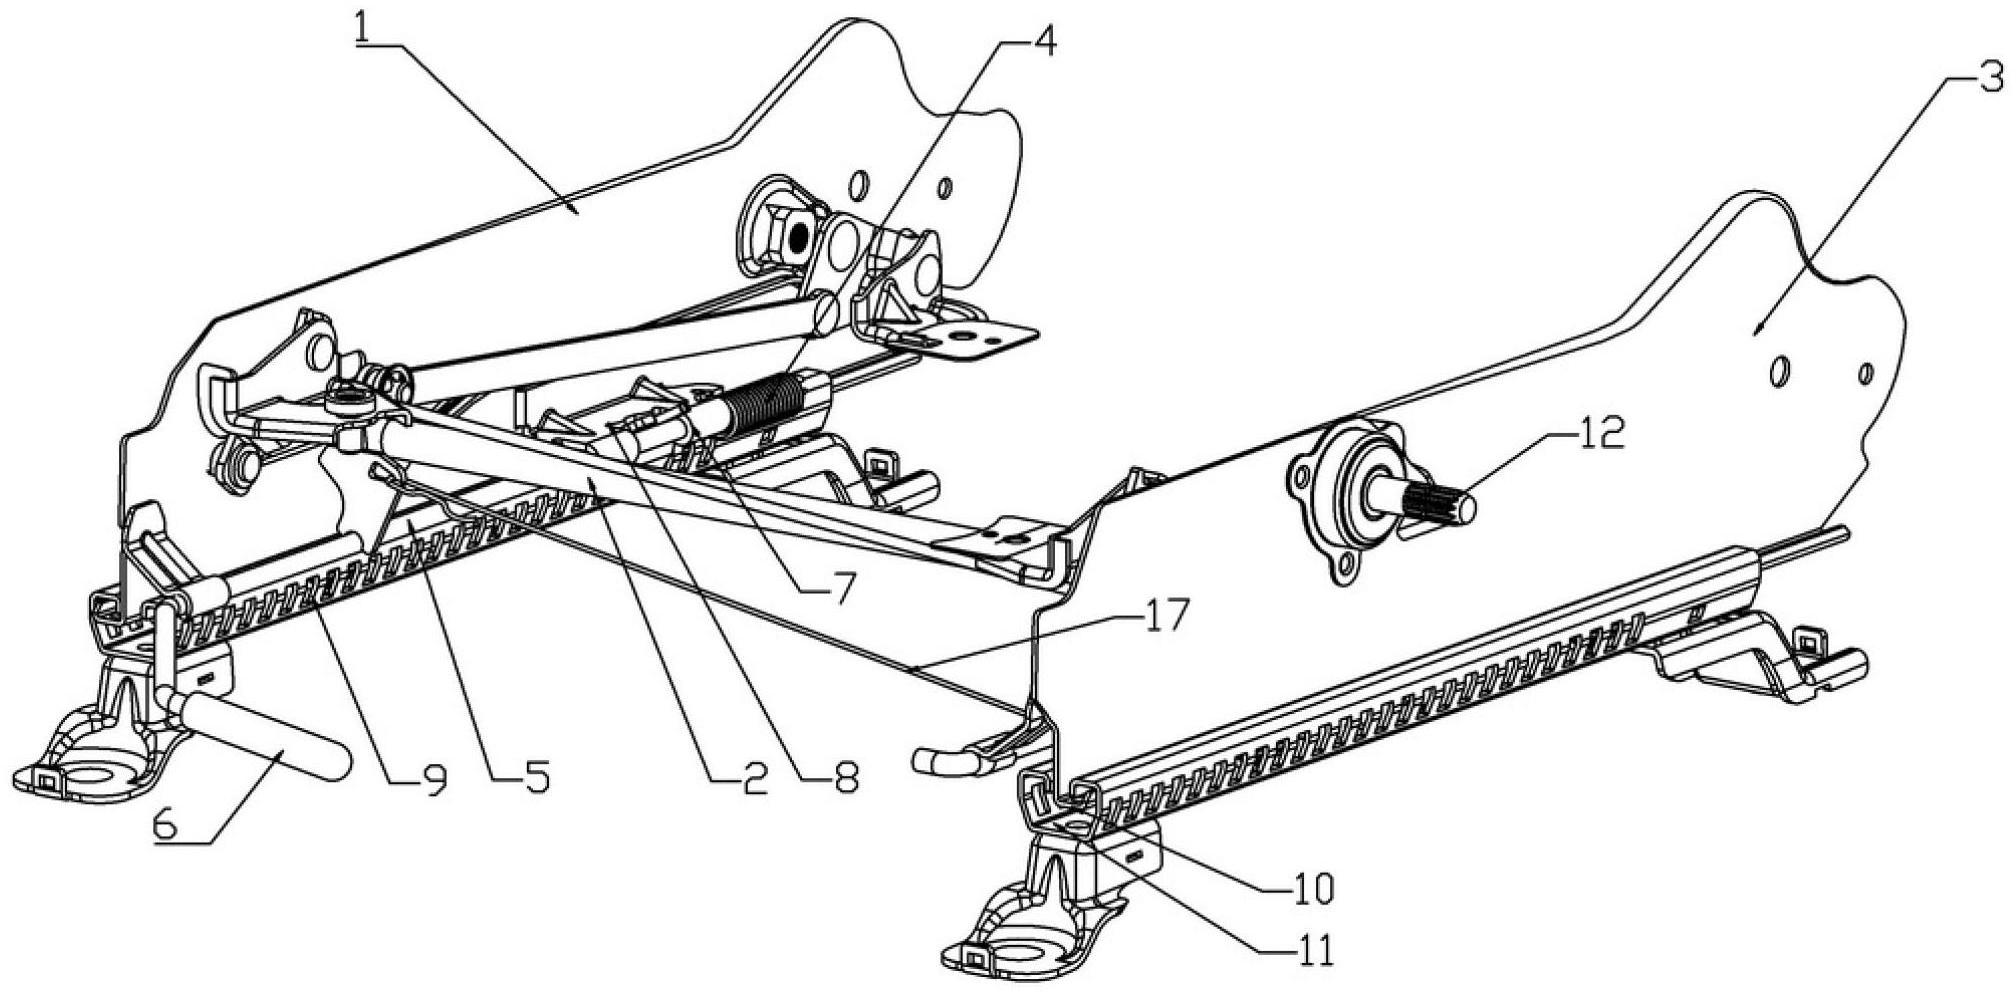 公开了一种多功能滑轨总成的结构示意图,包括滑轨本体和下滑道(11)